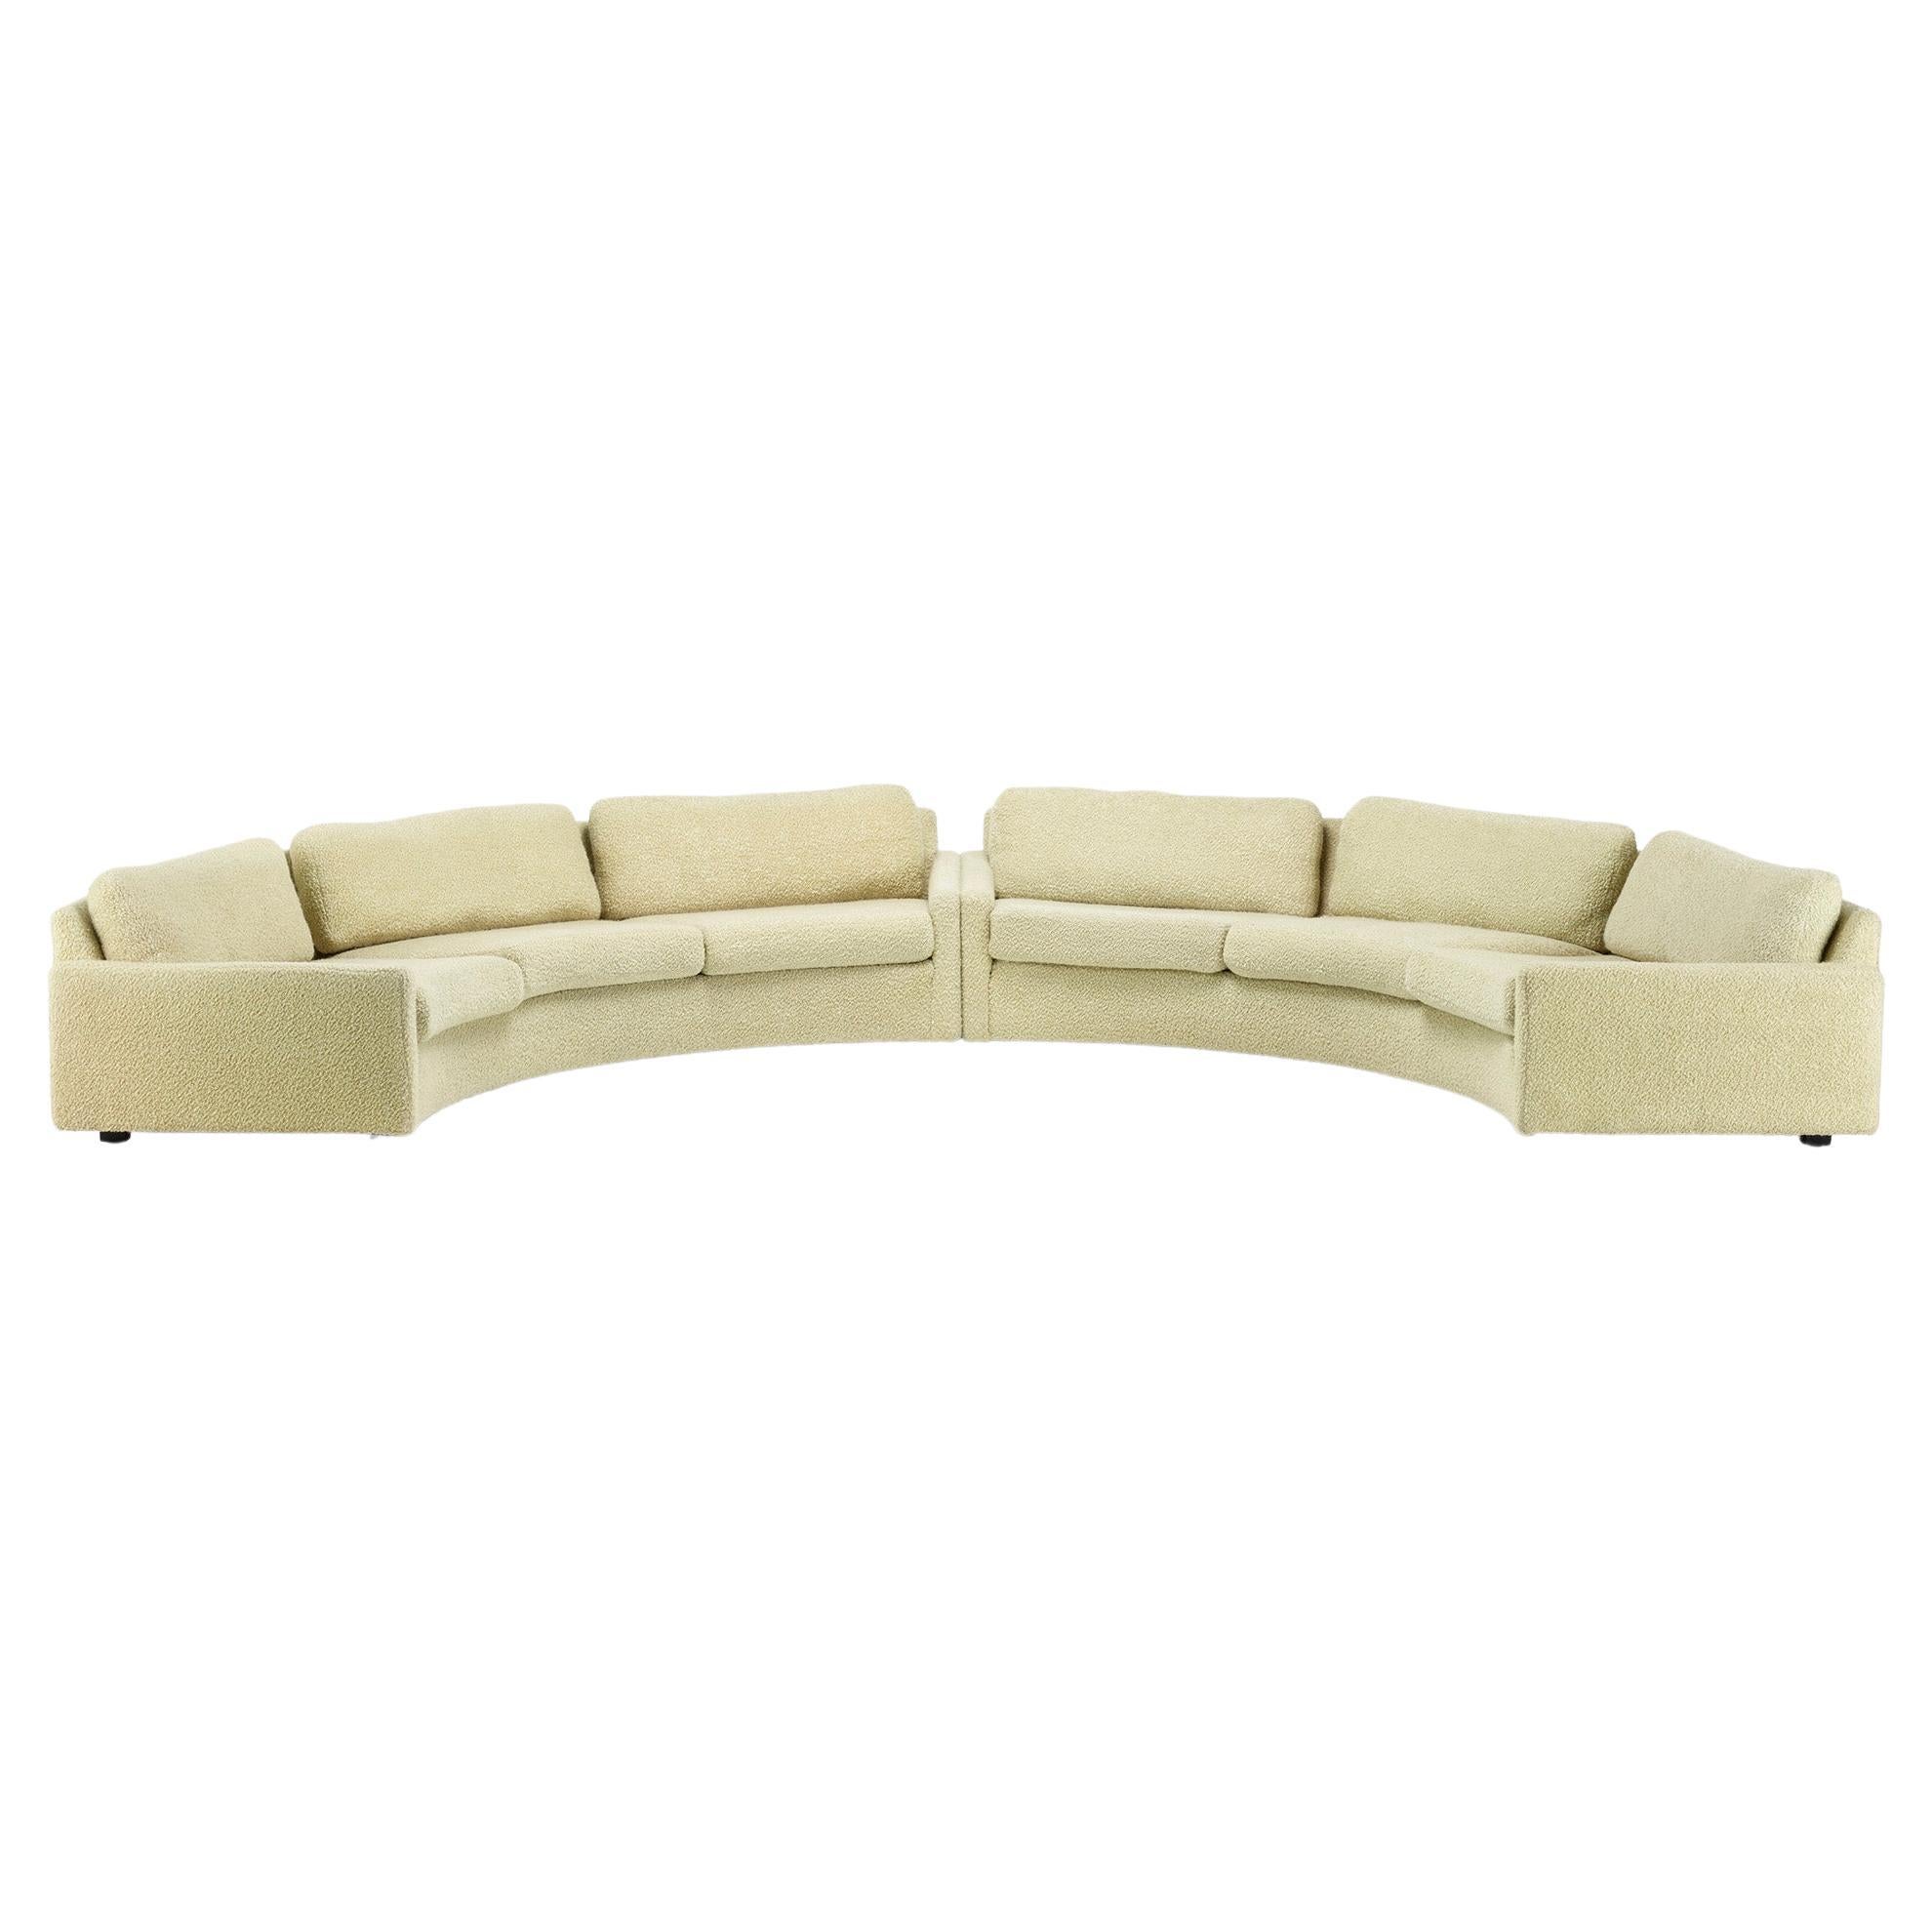 Milo Baughman Circular Sectional Sofa